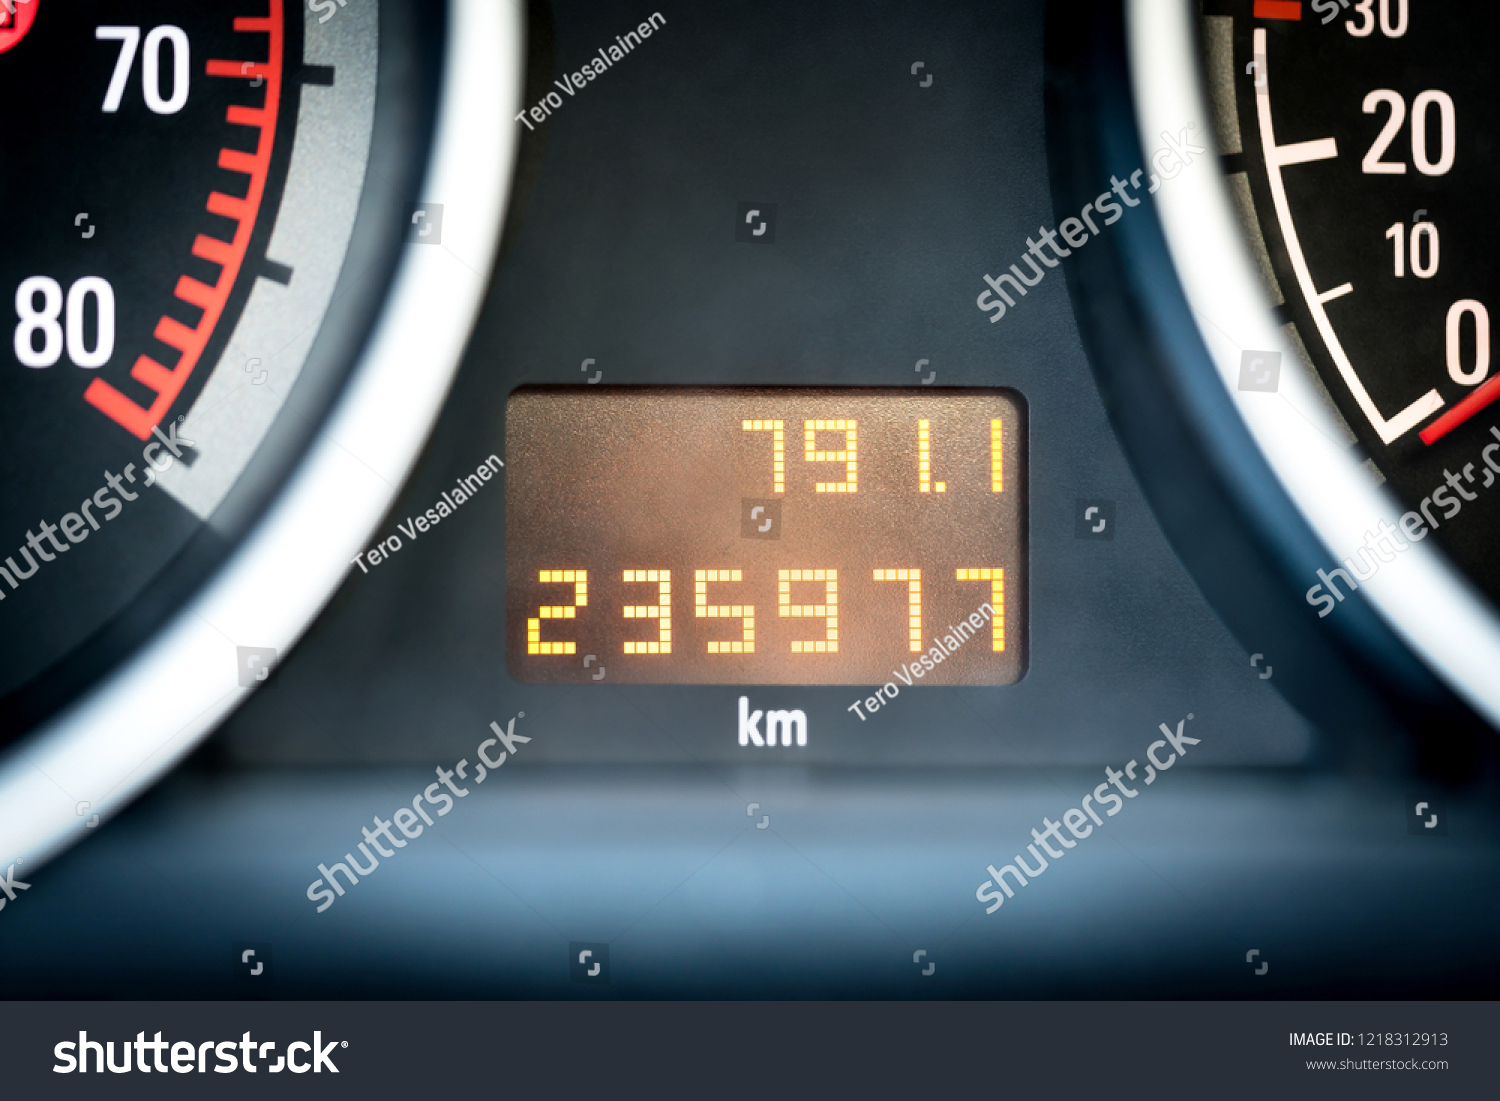 Digital car odometer in dashboard. Used vehicle with mileage meter. Numbers in kilometers. #1218312913